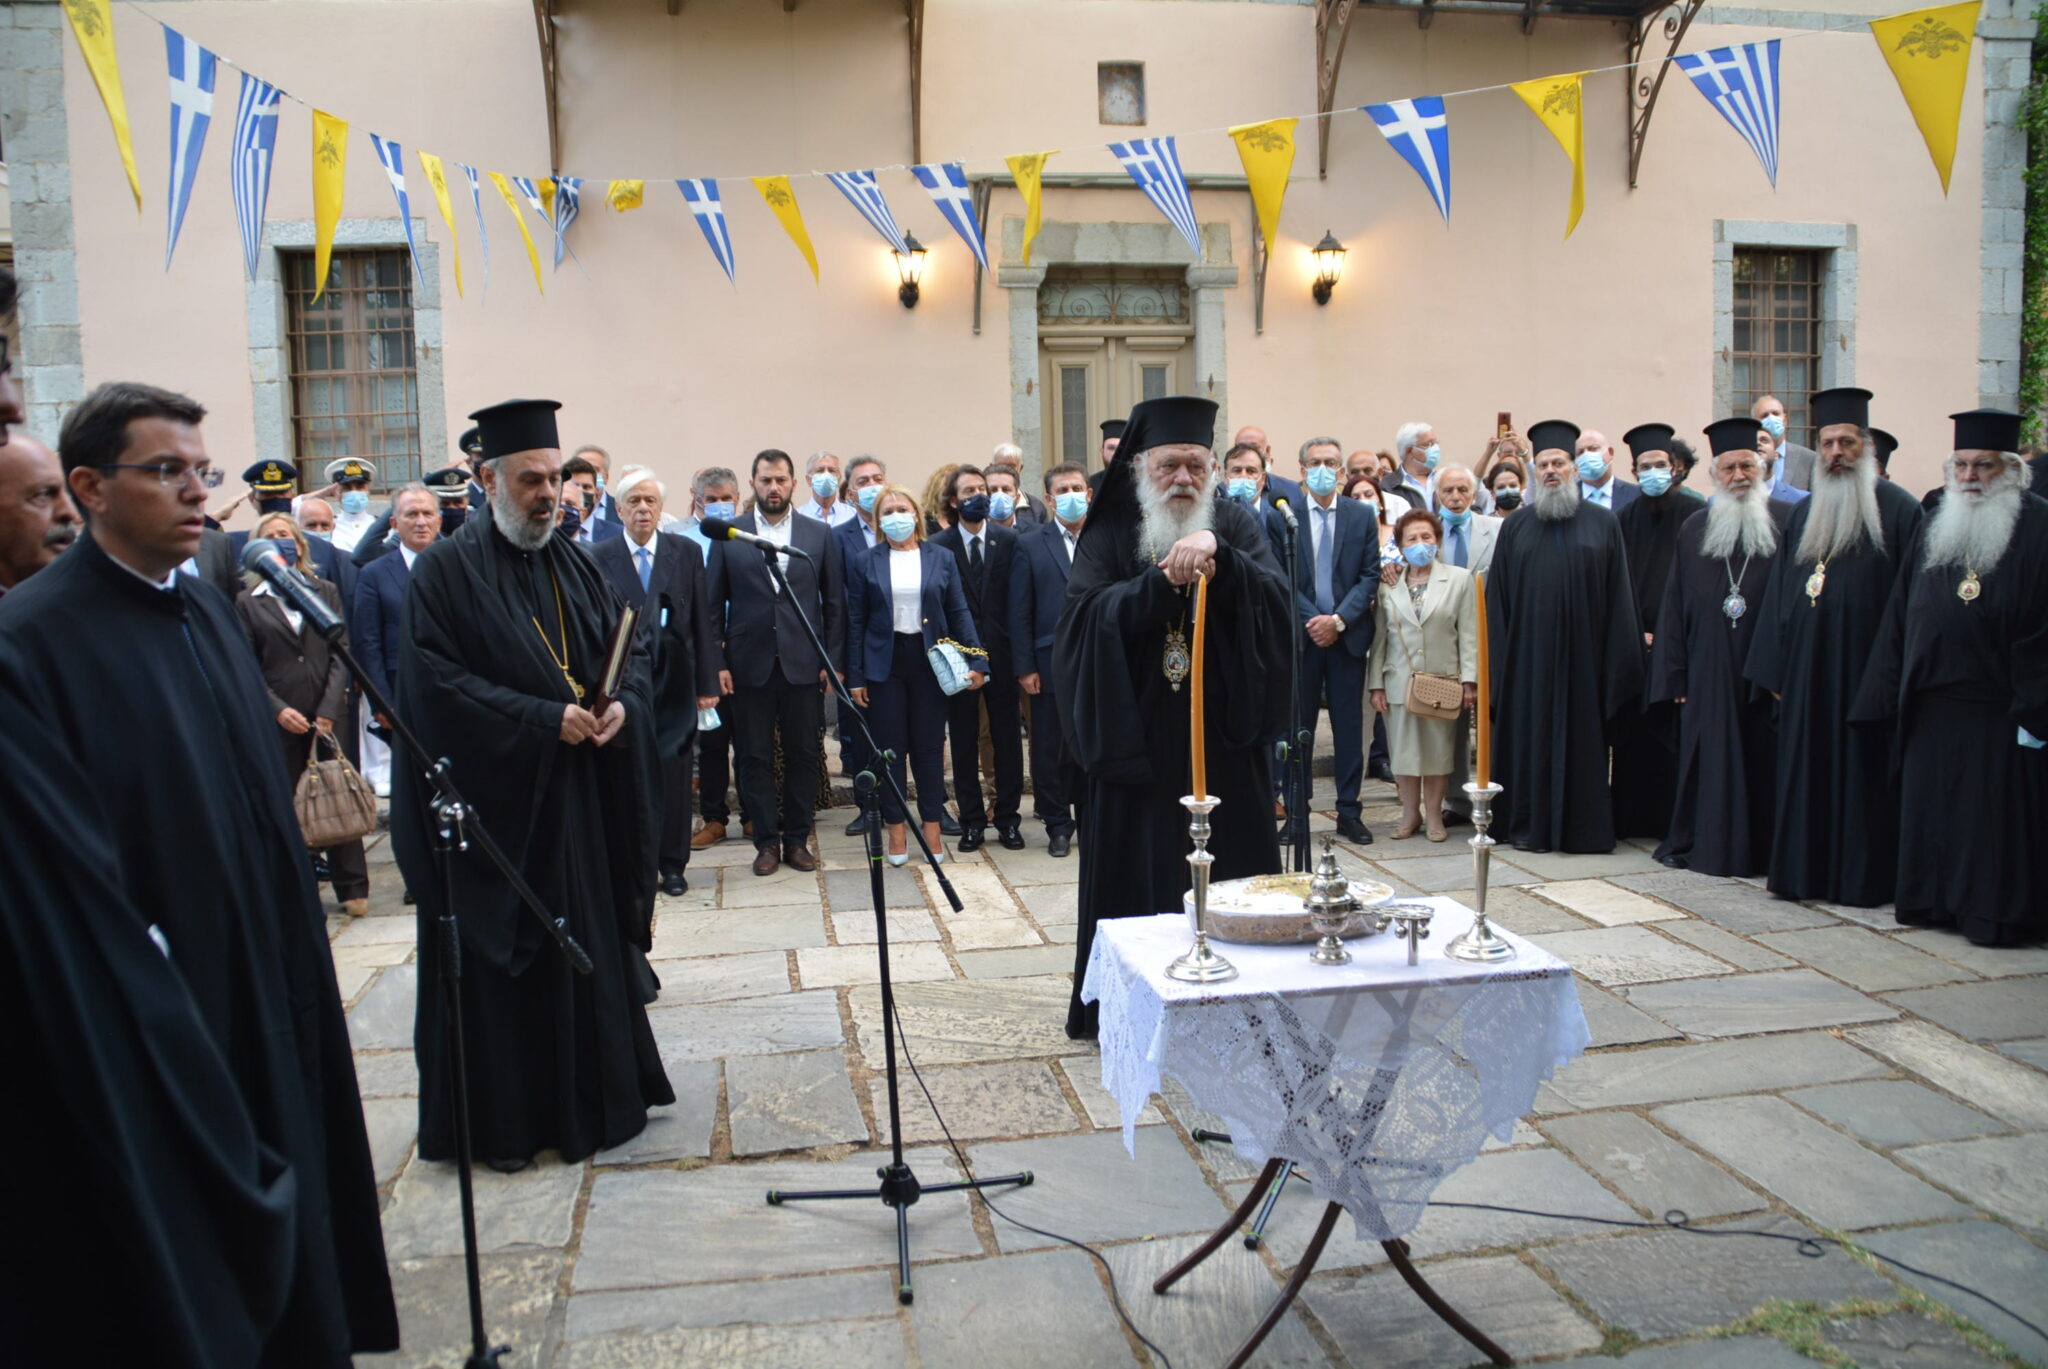 Επετειακή εκδήλωση στην Ι.Μονή Οσίου Λουκά για τη συμπλήρωση 200 χρόνων από την Ελληνική Επανάσταση